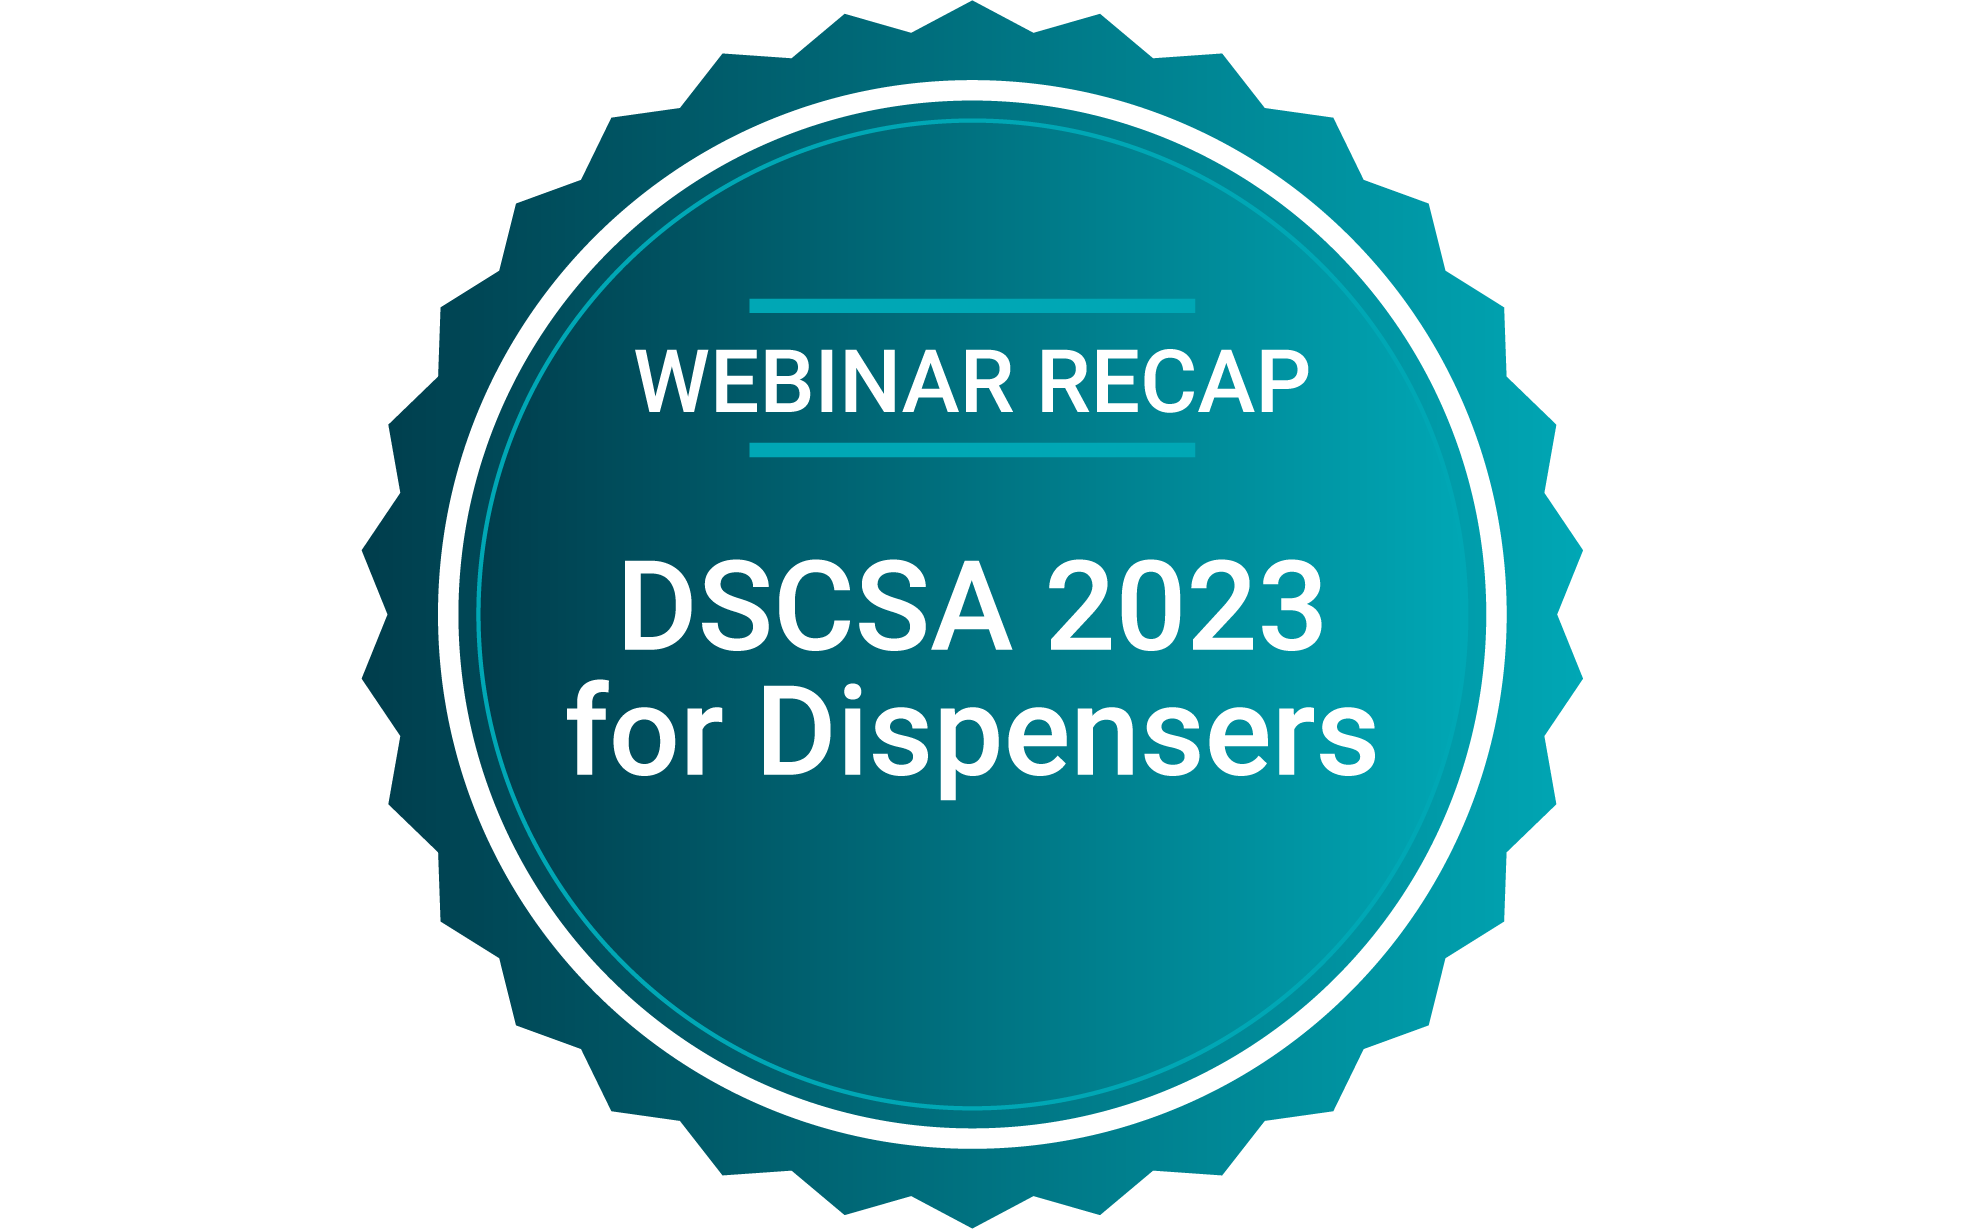 Webinar Recap DSCSA 2023 for Dispensers